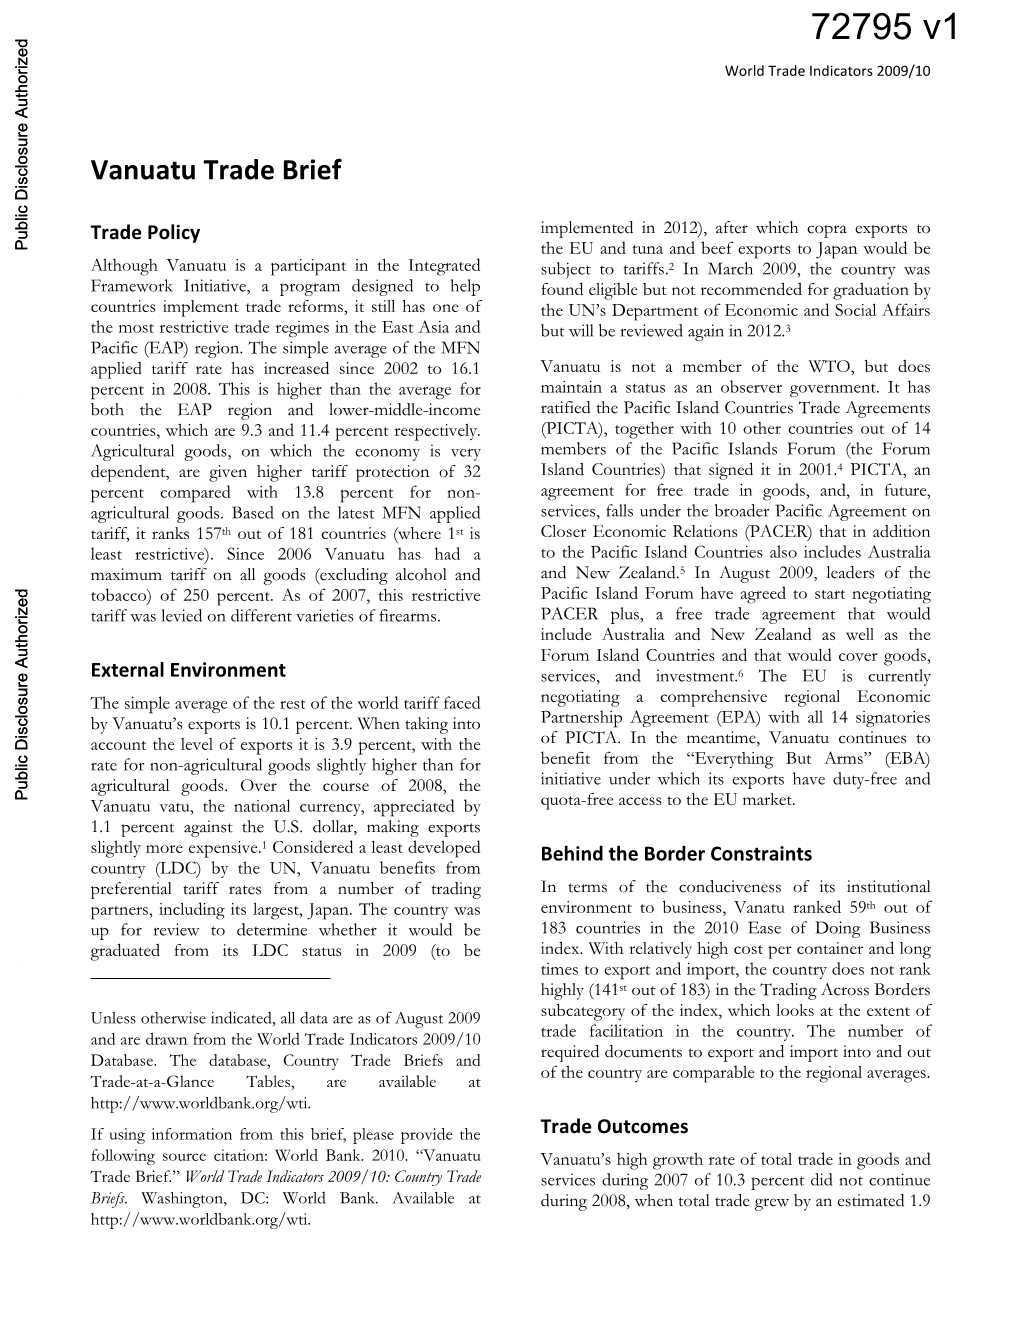 Vanuatu Trade Brief